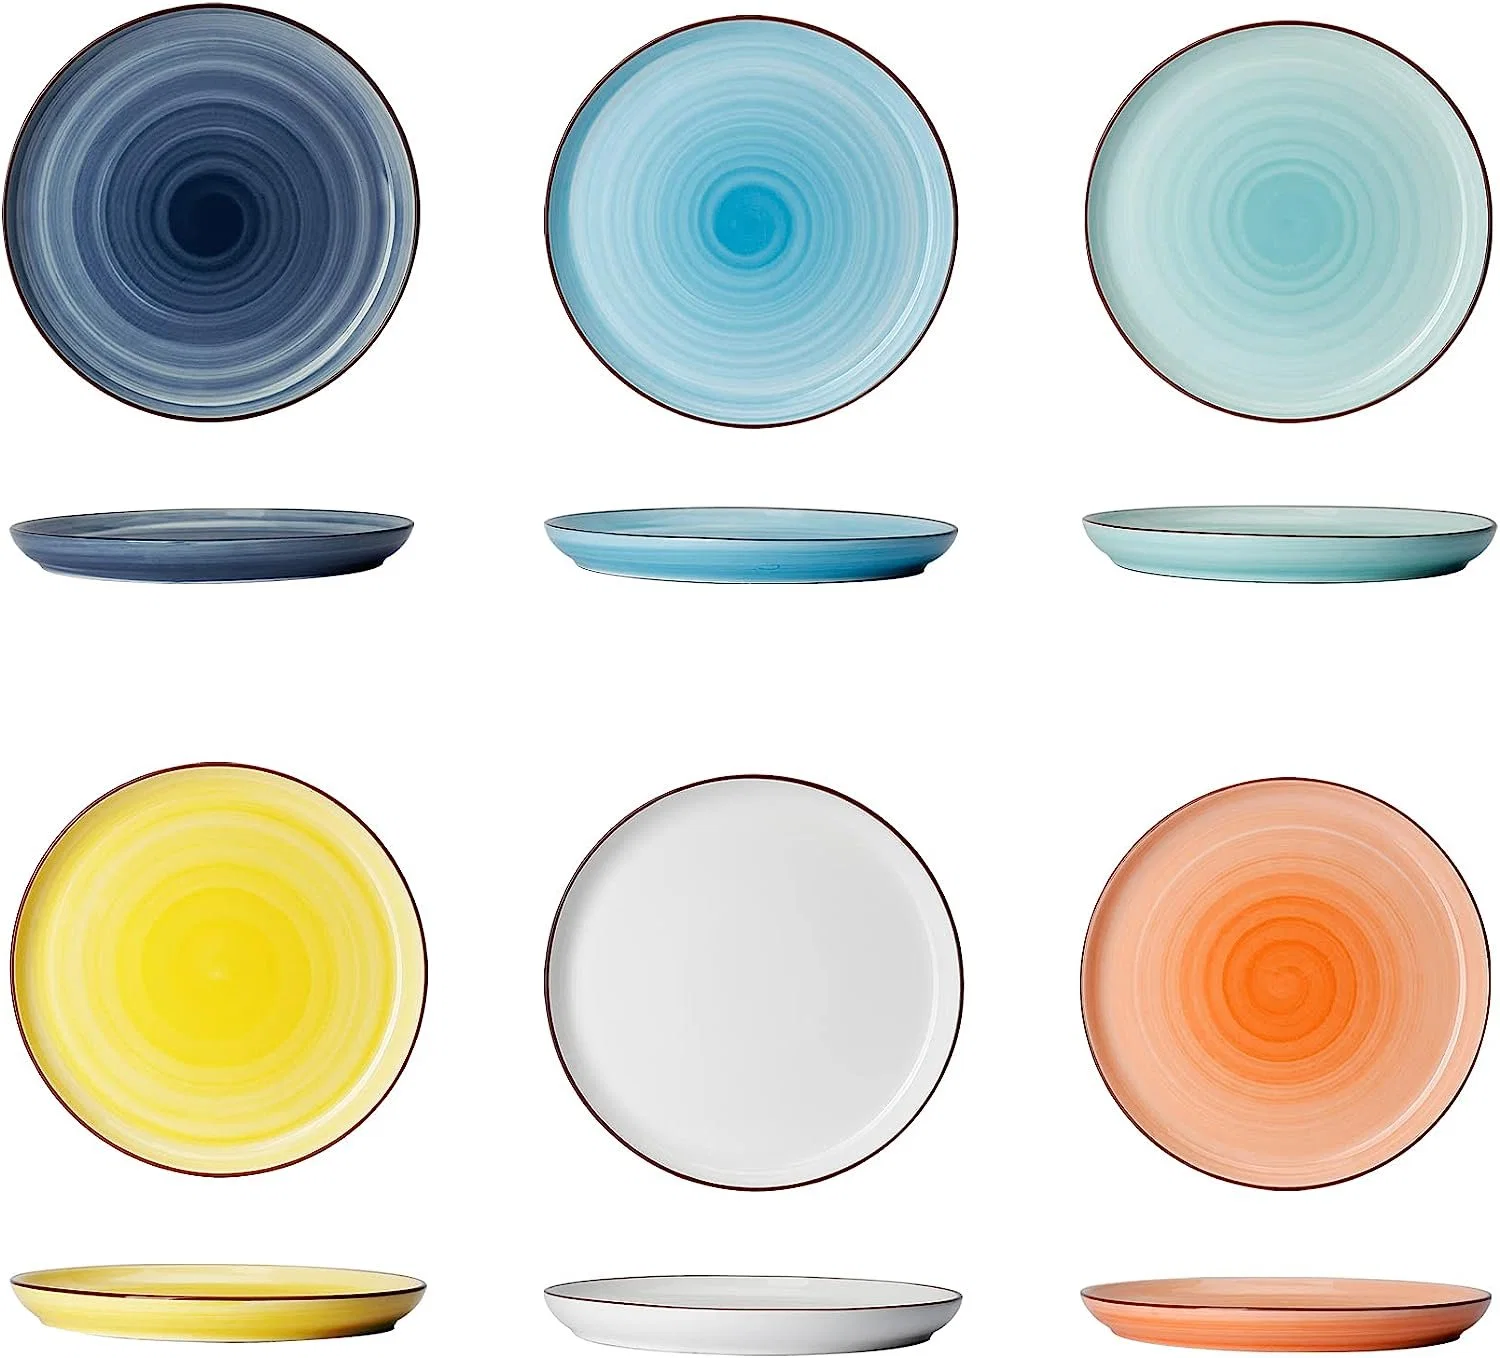 Vente en gros rond céramique porcelaine de style porcelaine de couleur bleue et blanche céramique Assiette vaisselle